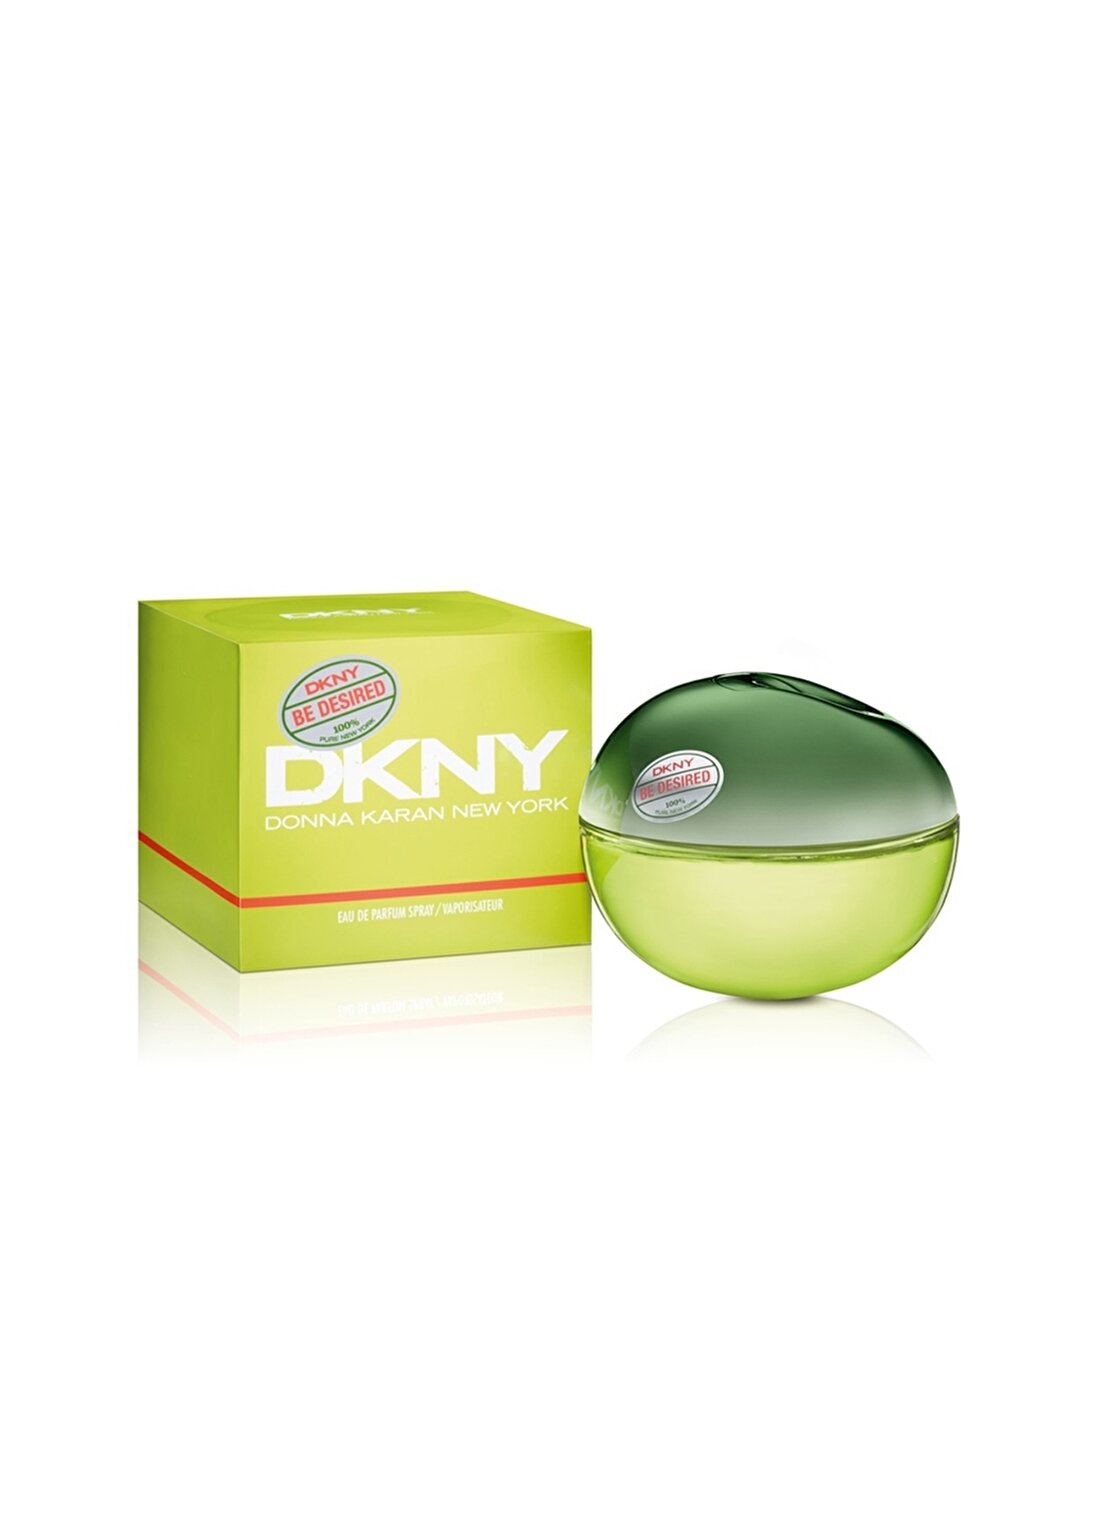 Dkny Be Delicious Fresh Blossom Edp 100 Ml Kadın Parfüm